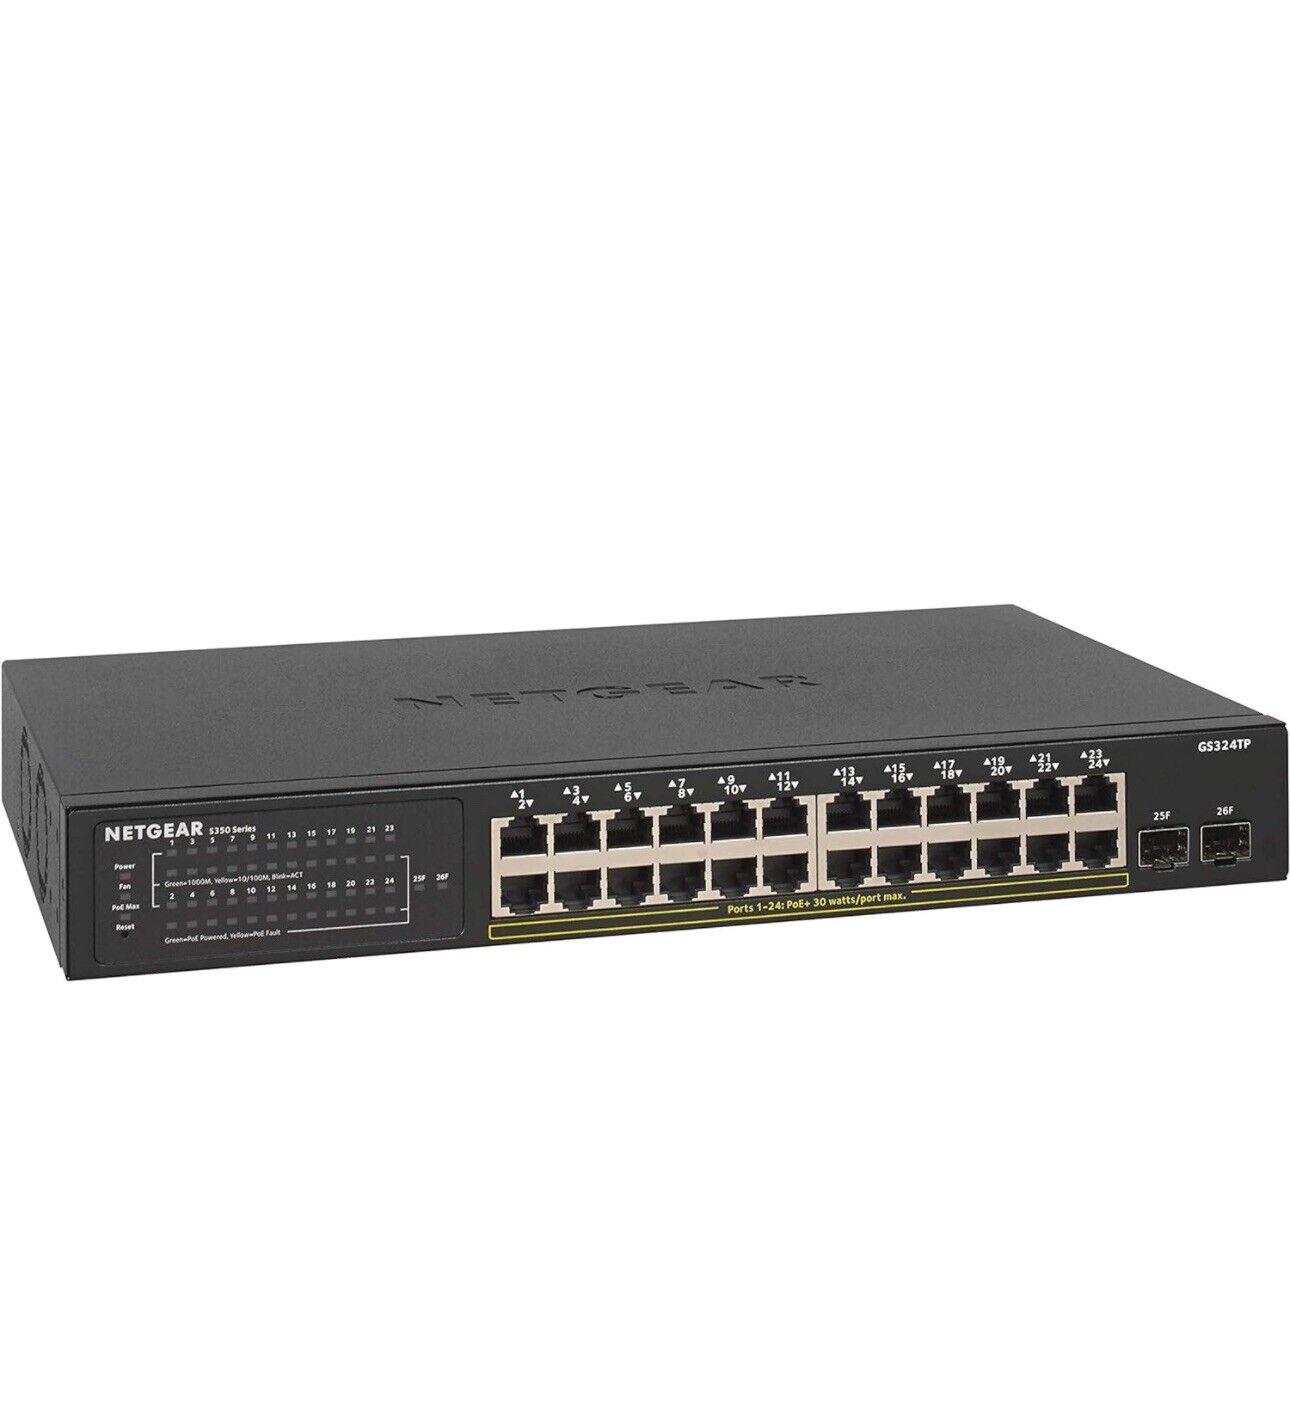 Netgear GS324P Ethernet Switch (24 Port) NEW